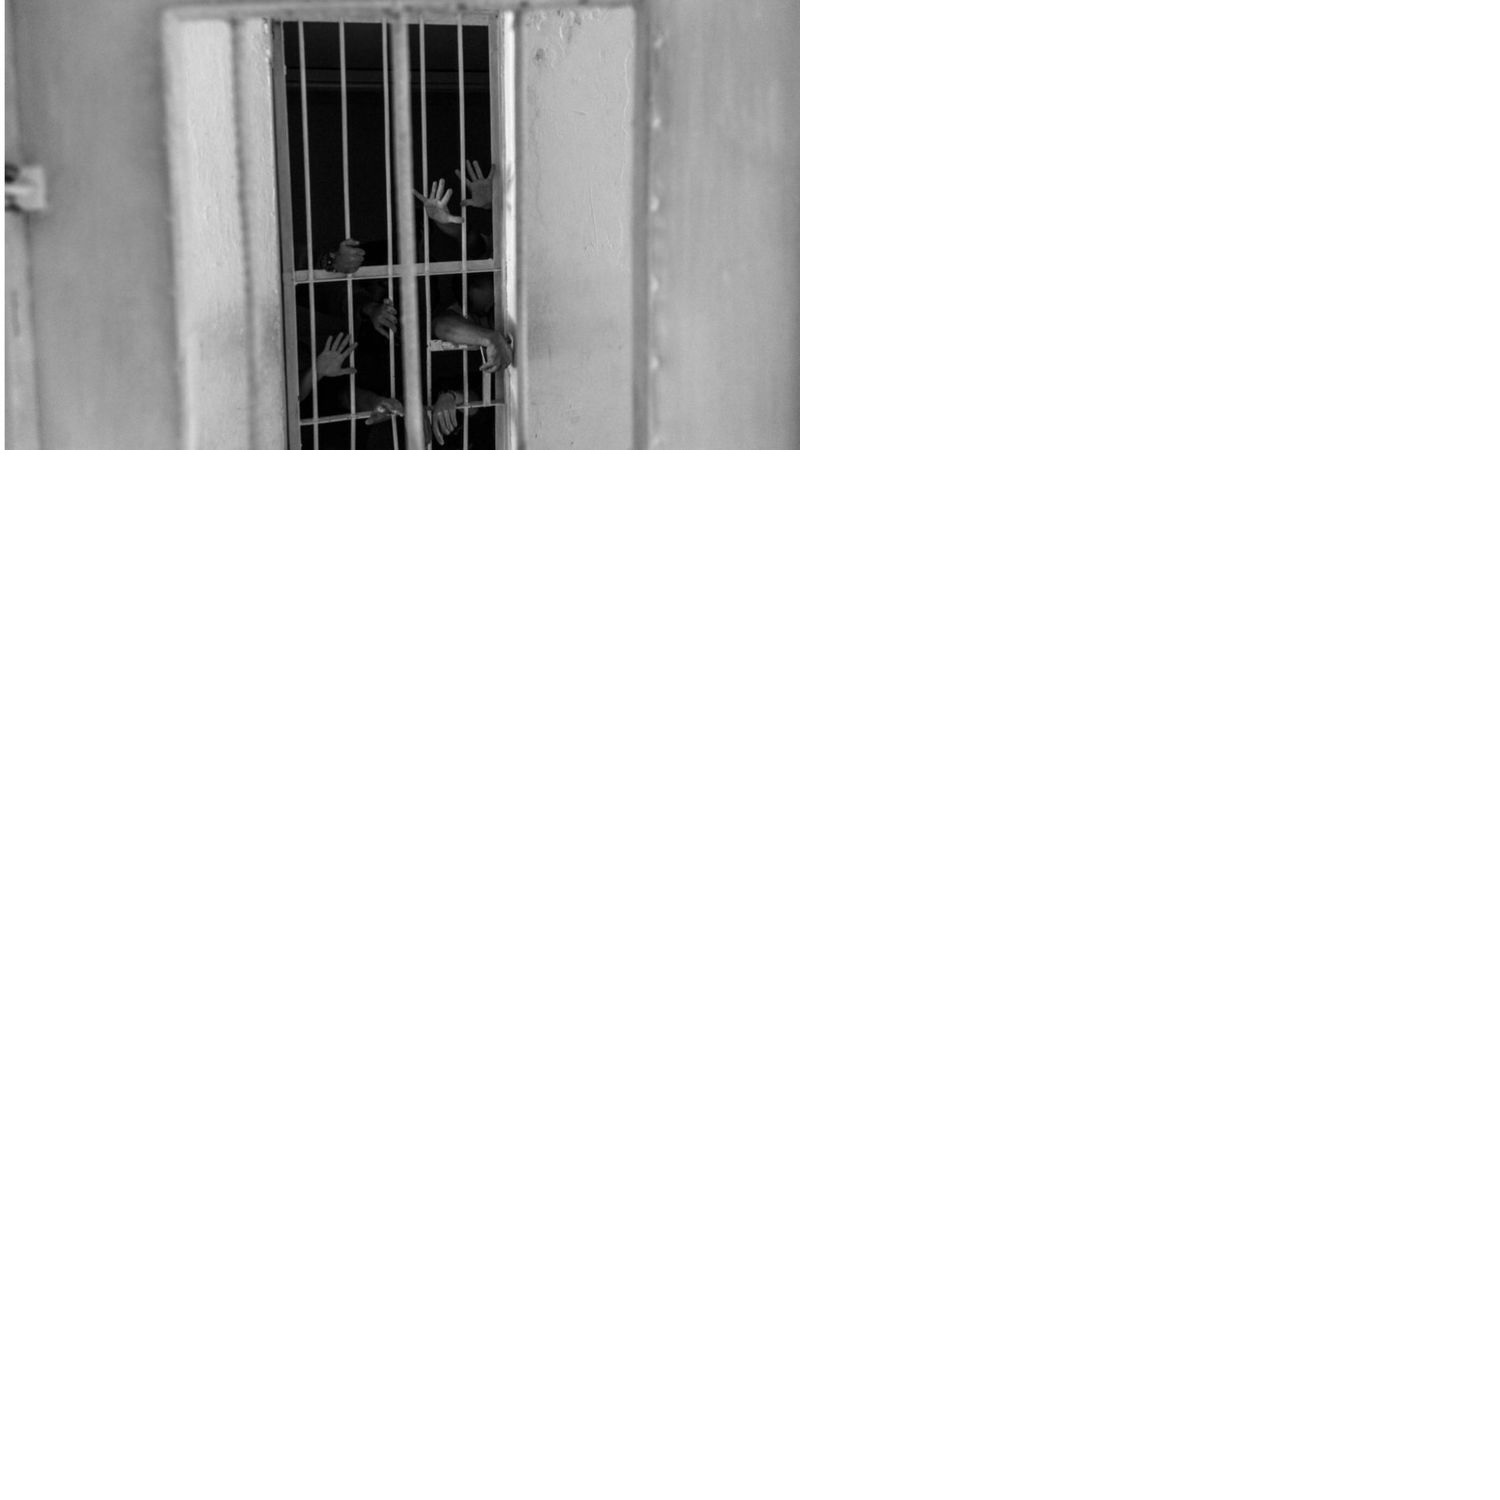 শিশু উন্নয়ন কেন্দ্রের ৯ কর্মকর্তাকে পুলিশি হেফাজতে জিজ্ঞাসাবাদ শুরু